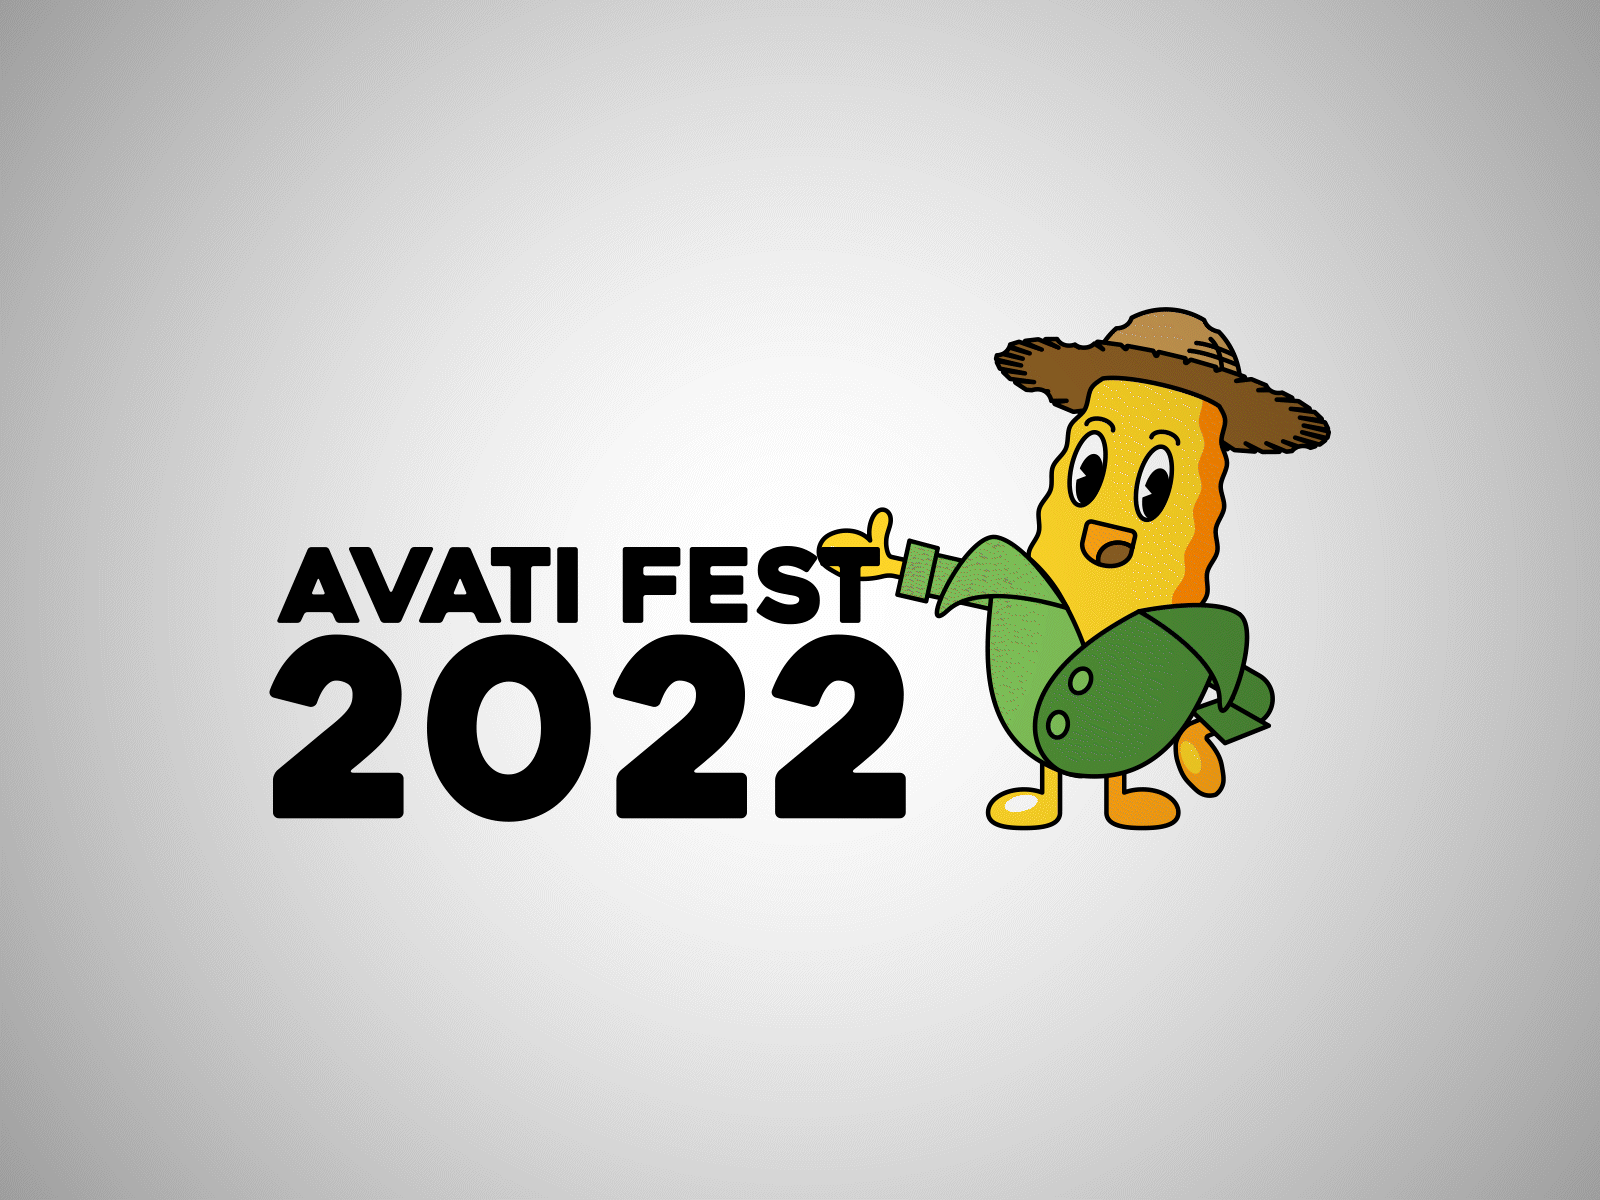 Avati Fest 2022